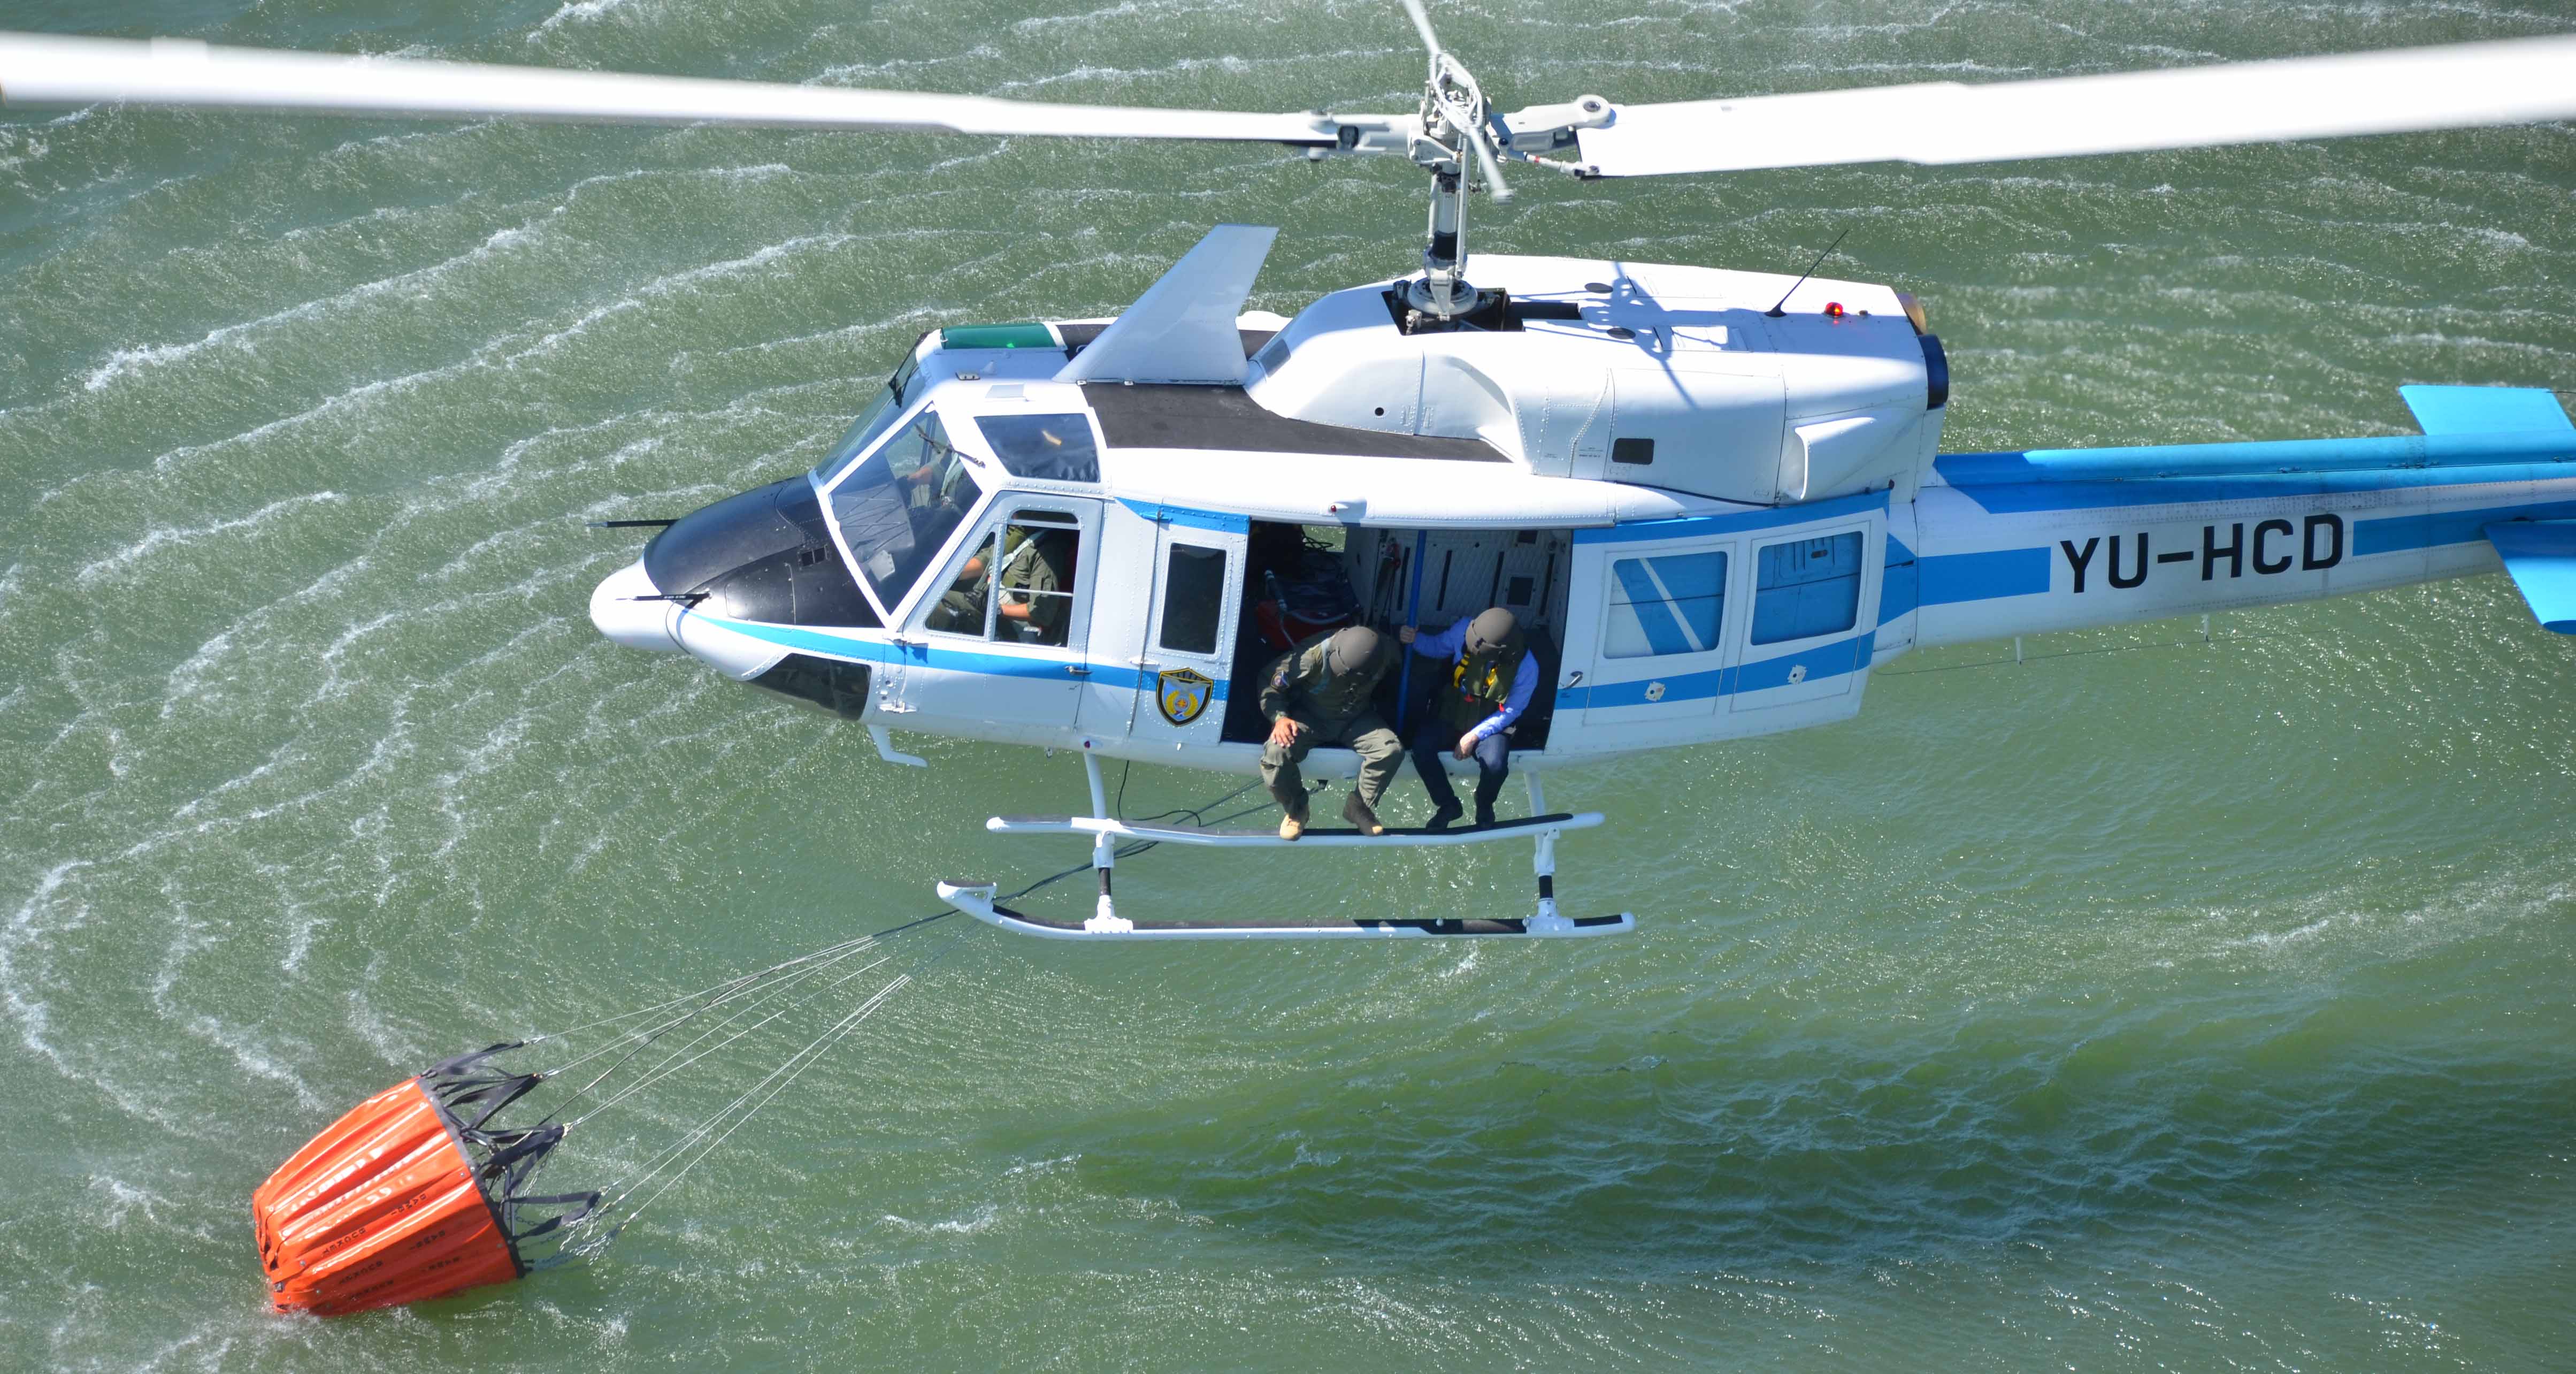 Хеликоптерскa јединицa увек спремна да извршава задатке